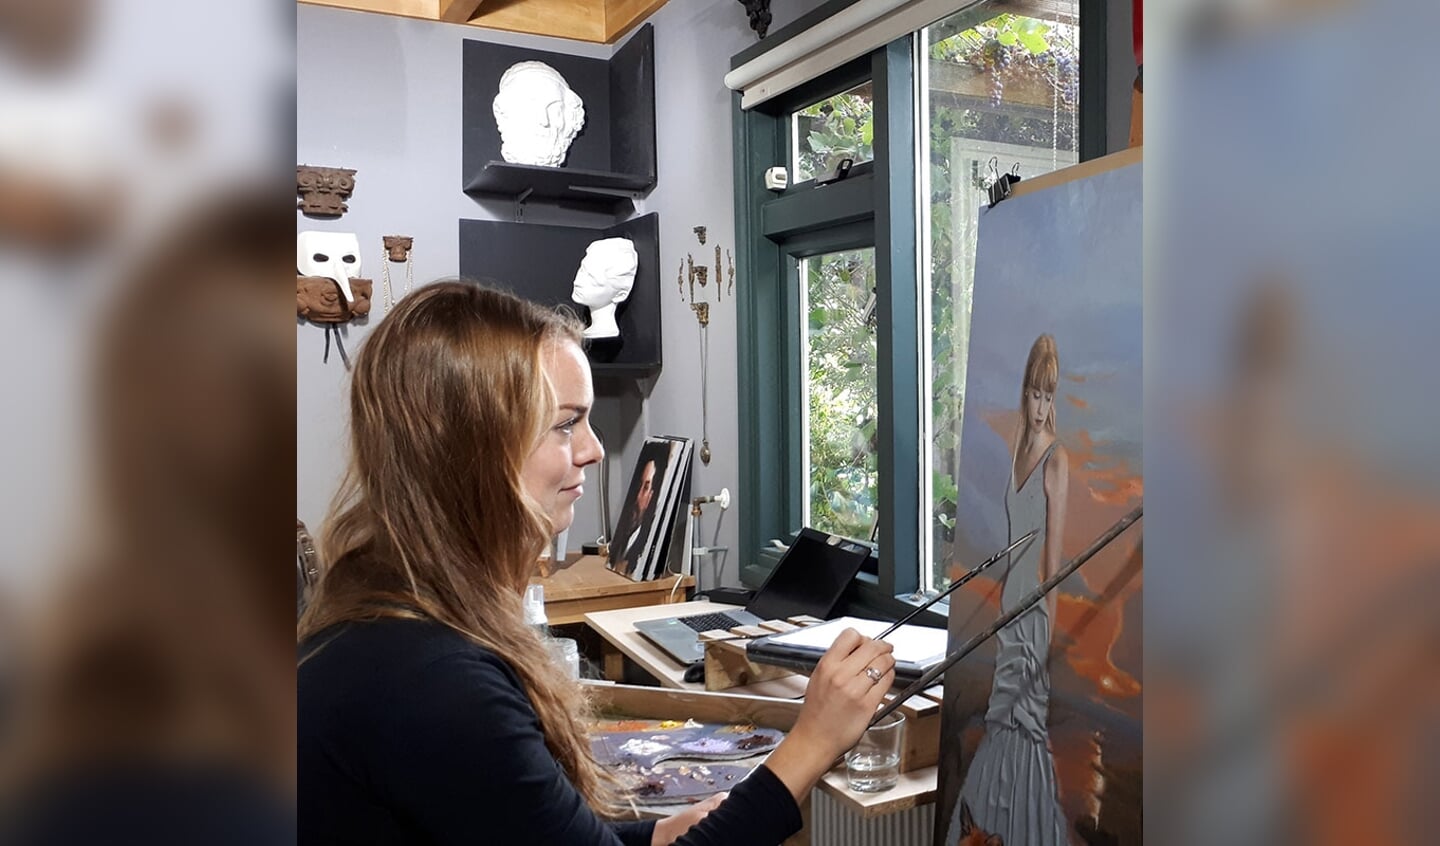 De kunstenaars Gabriëlle Westra exposeert op Good Looking, maar geeft ook workshops voor het schilderen en boetseren van portretten. Foto: PR